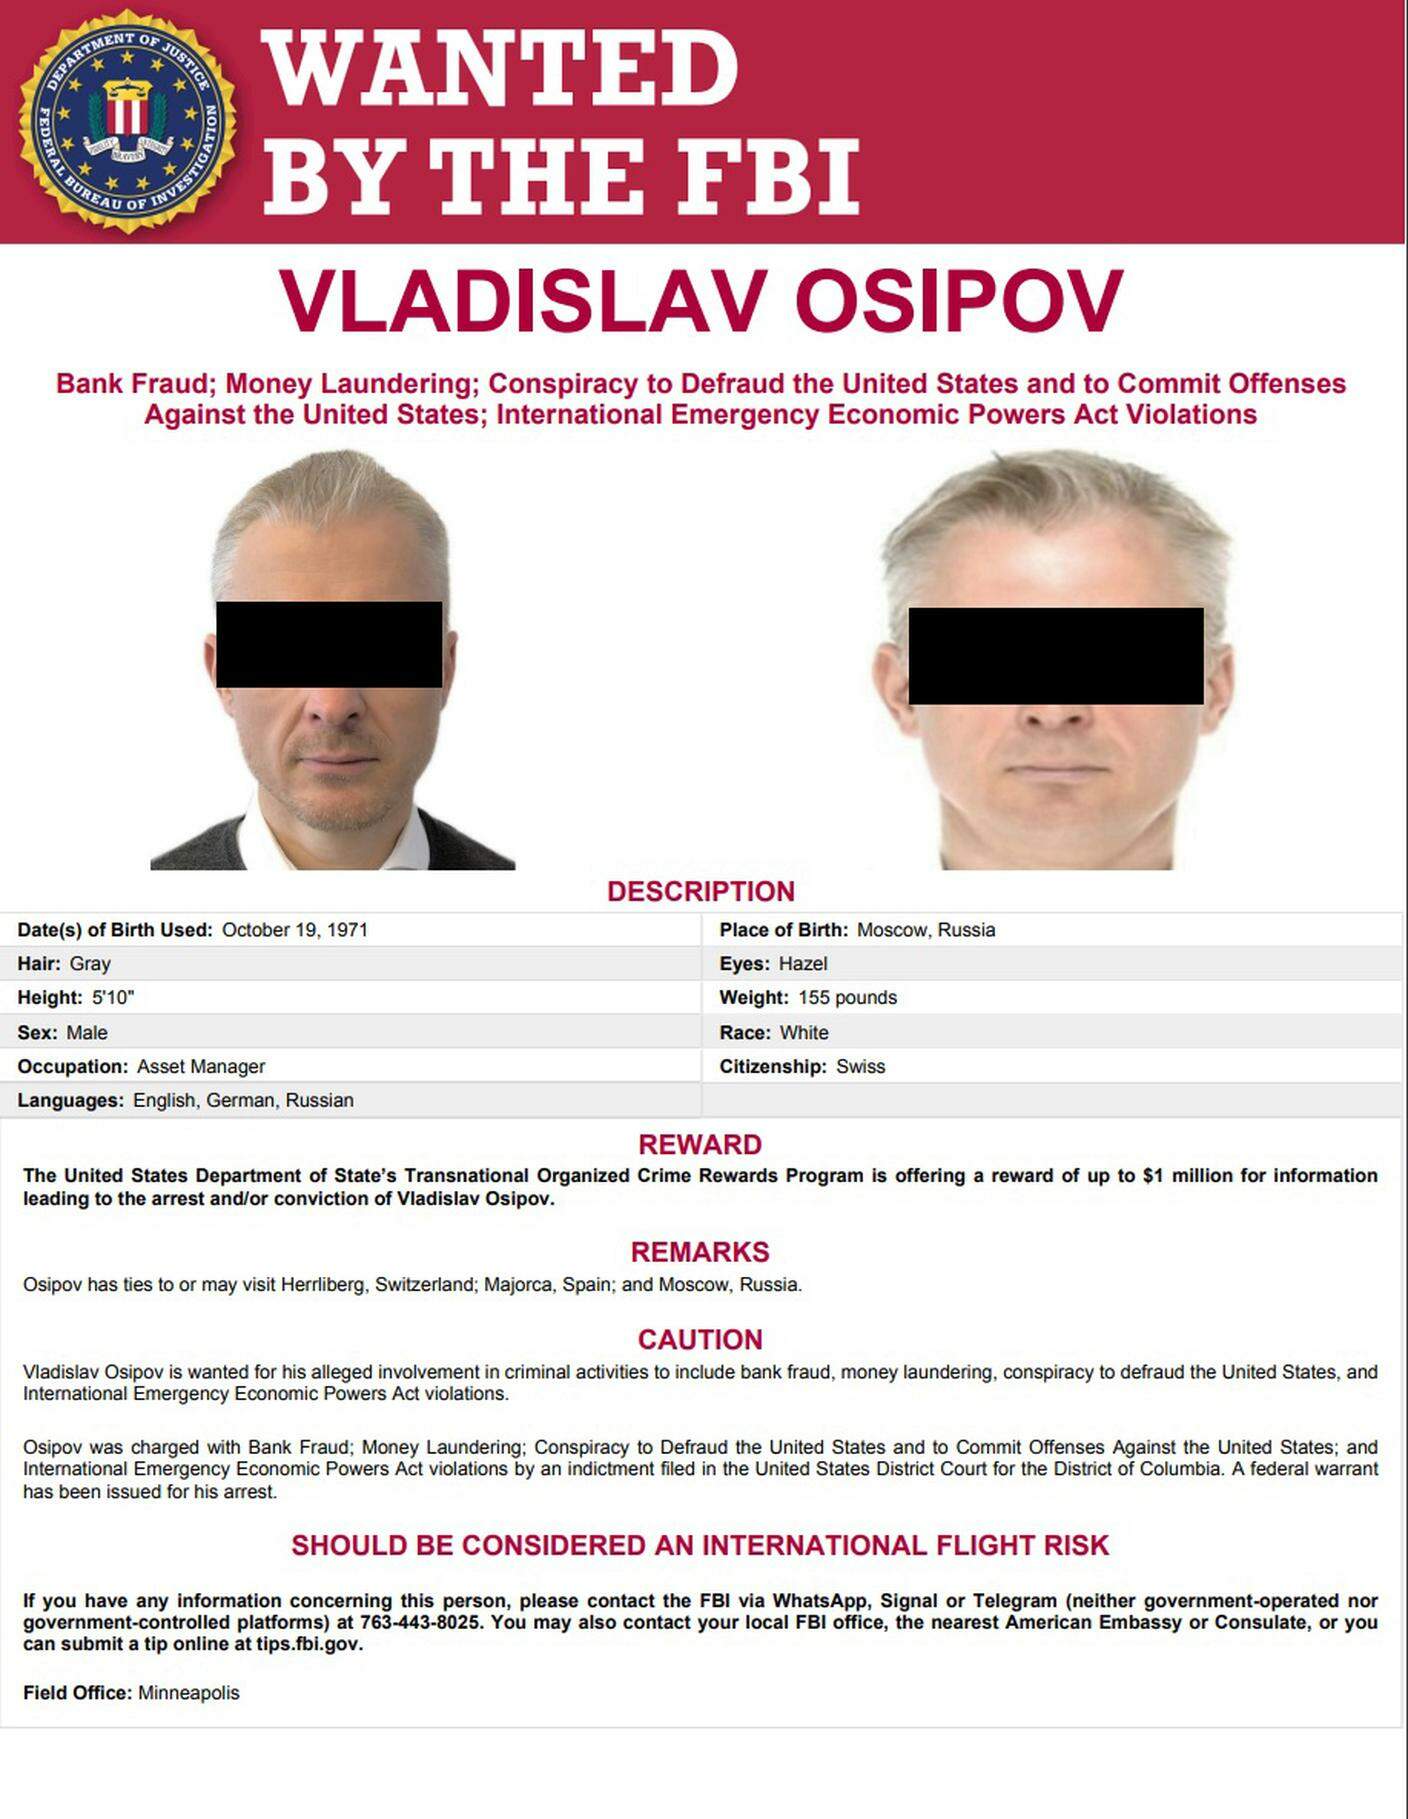 Fahndungsfoto des FBI über Vladislav Osipov